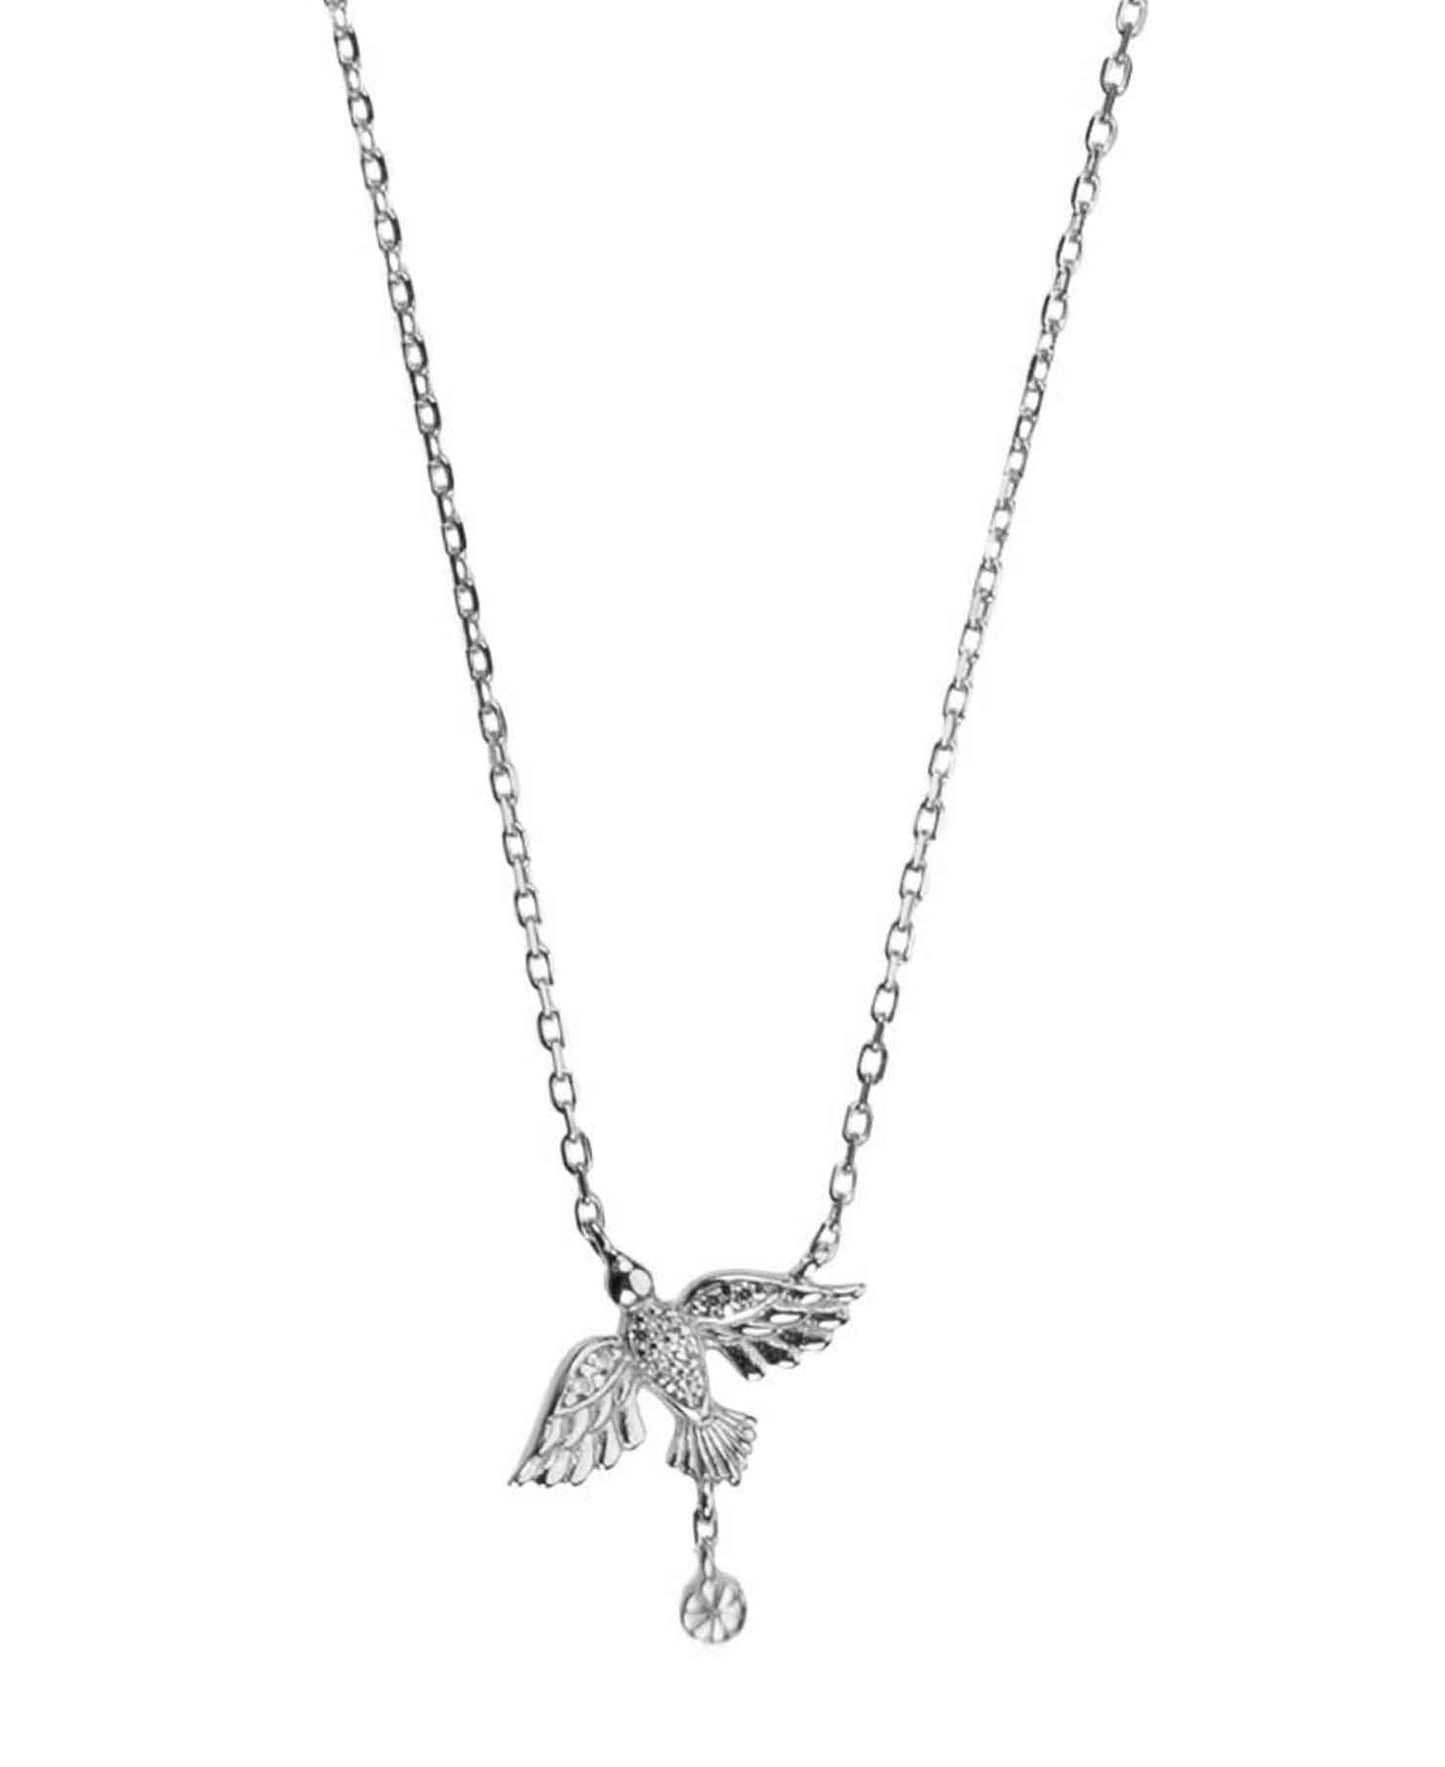 Birdie necklace